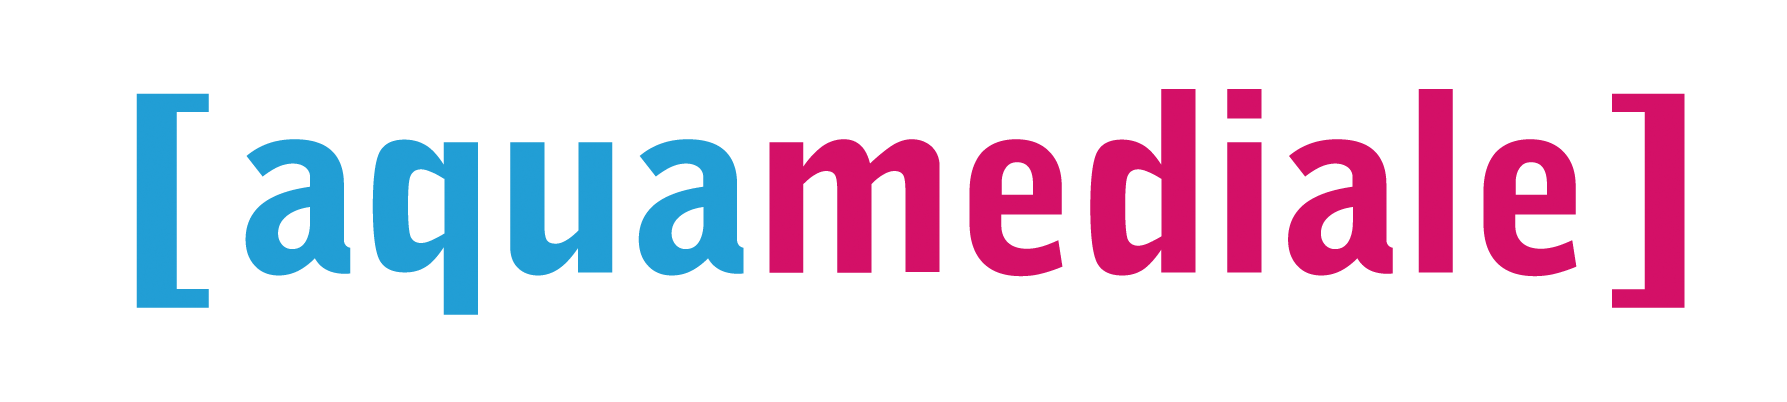 aquamediale logo